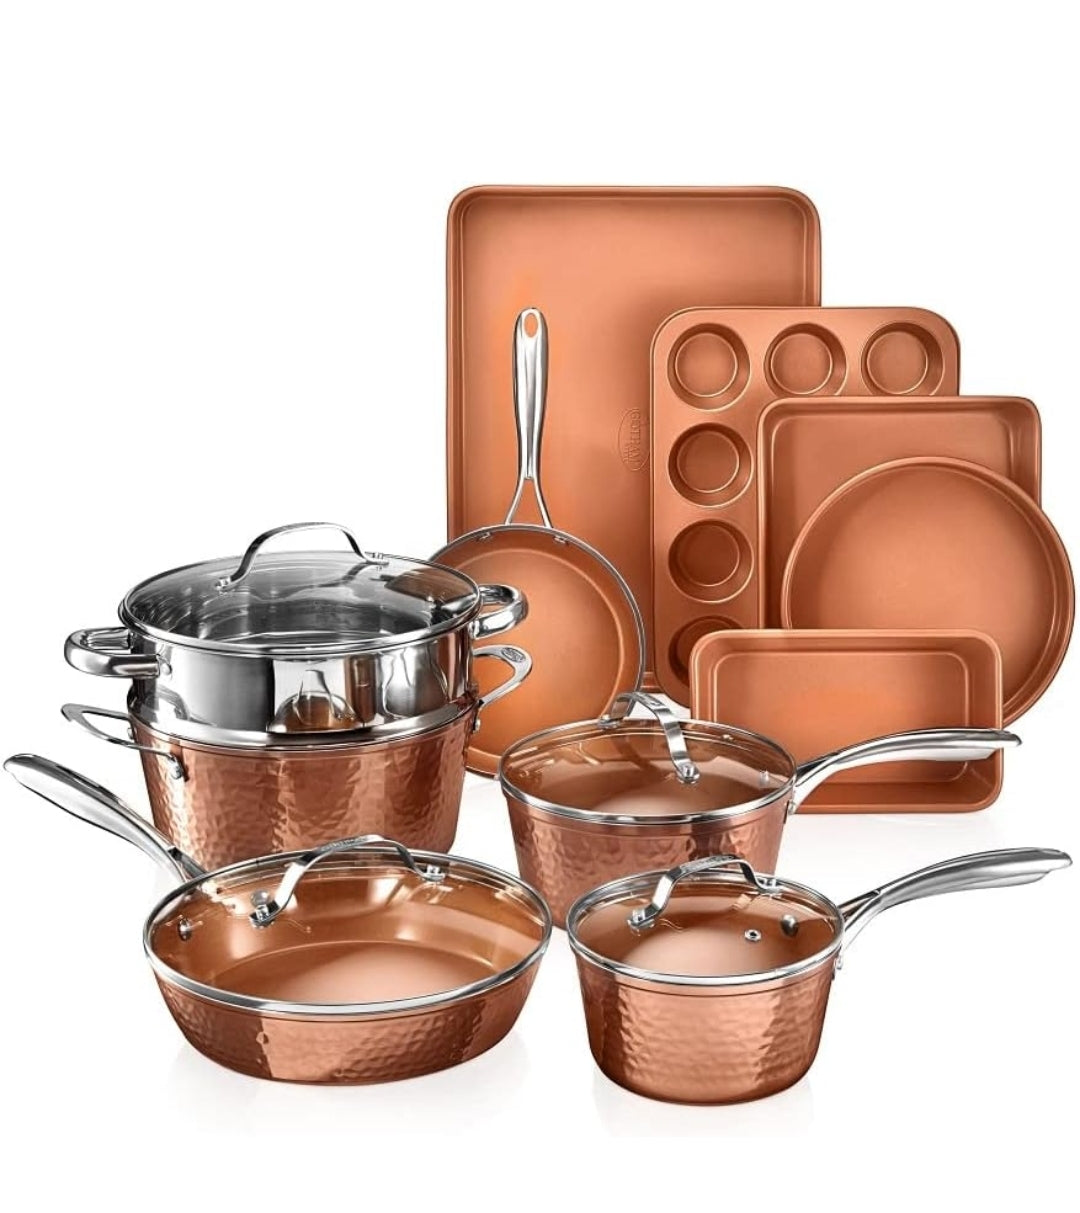 Gotham Steel Hammered Copper 15-Piece Cookware & Bakeware Set